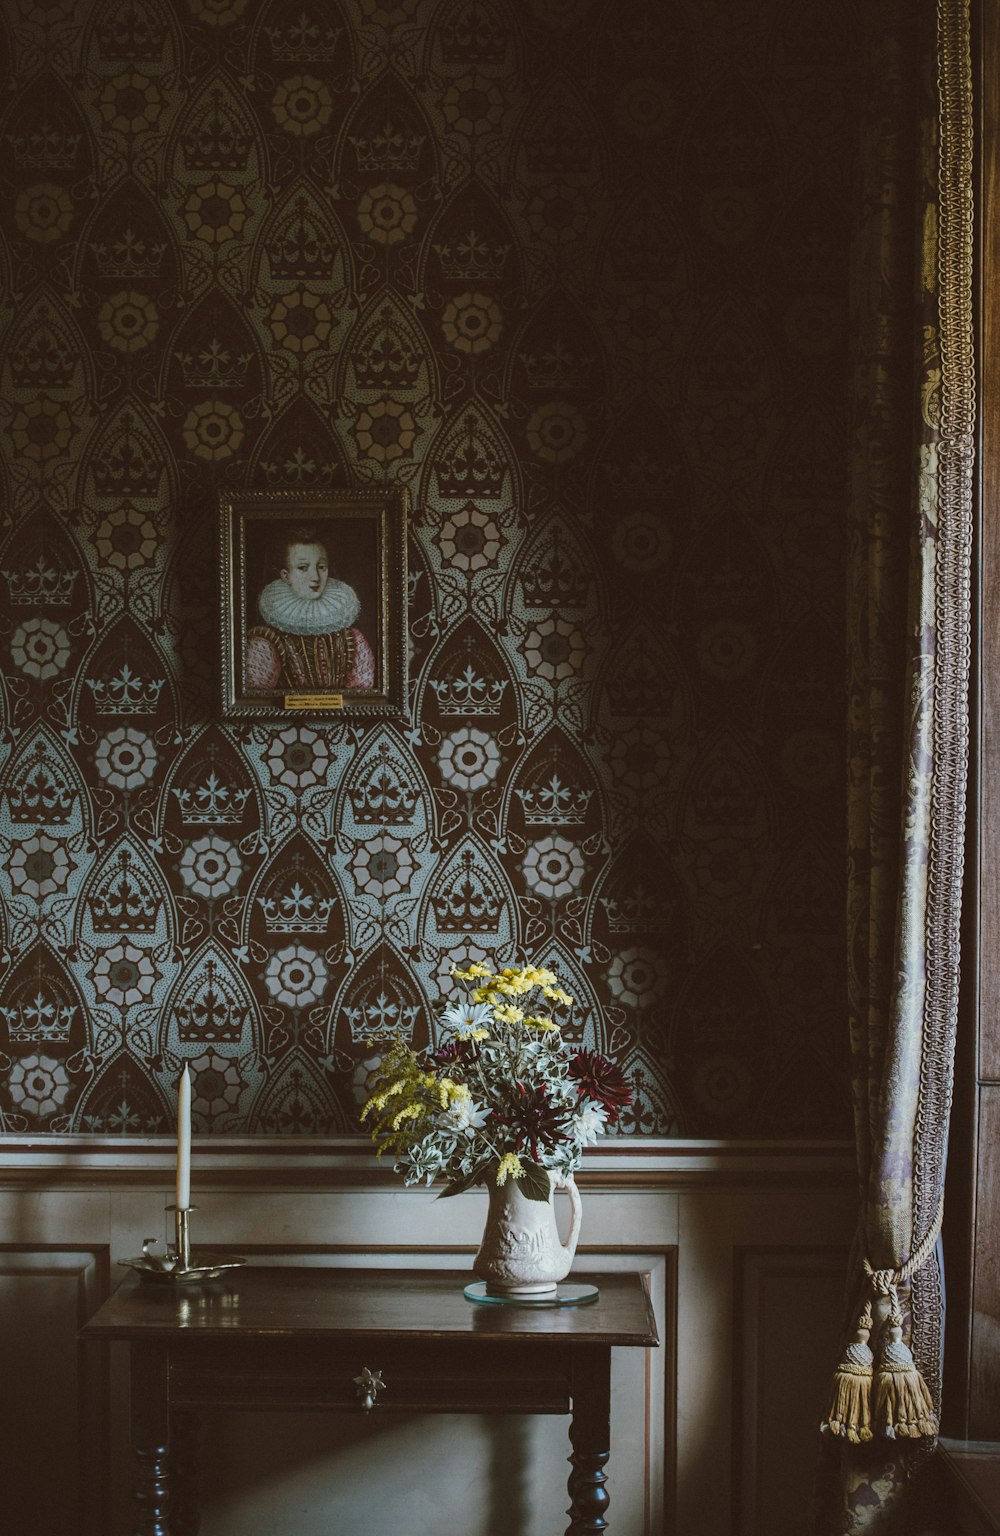 peinture accrochée au mur au-dessus de l’arrangement floral sur la table console